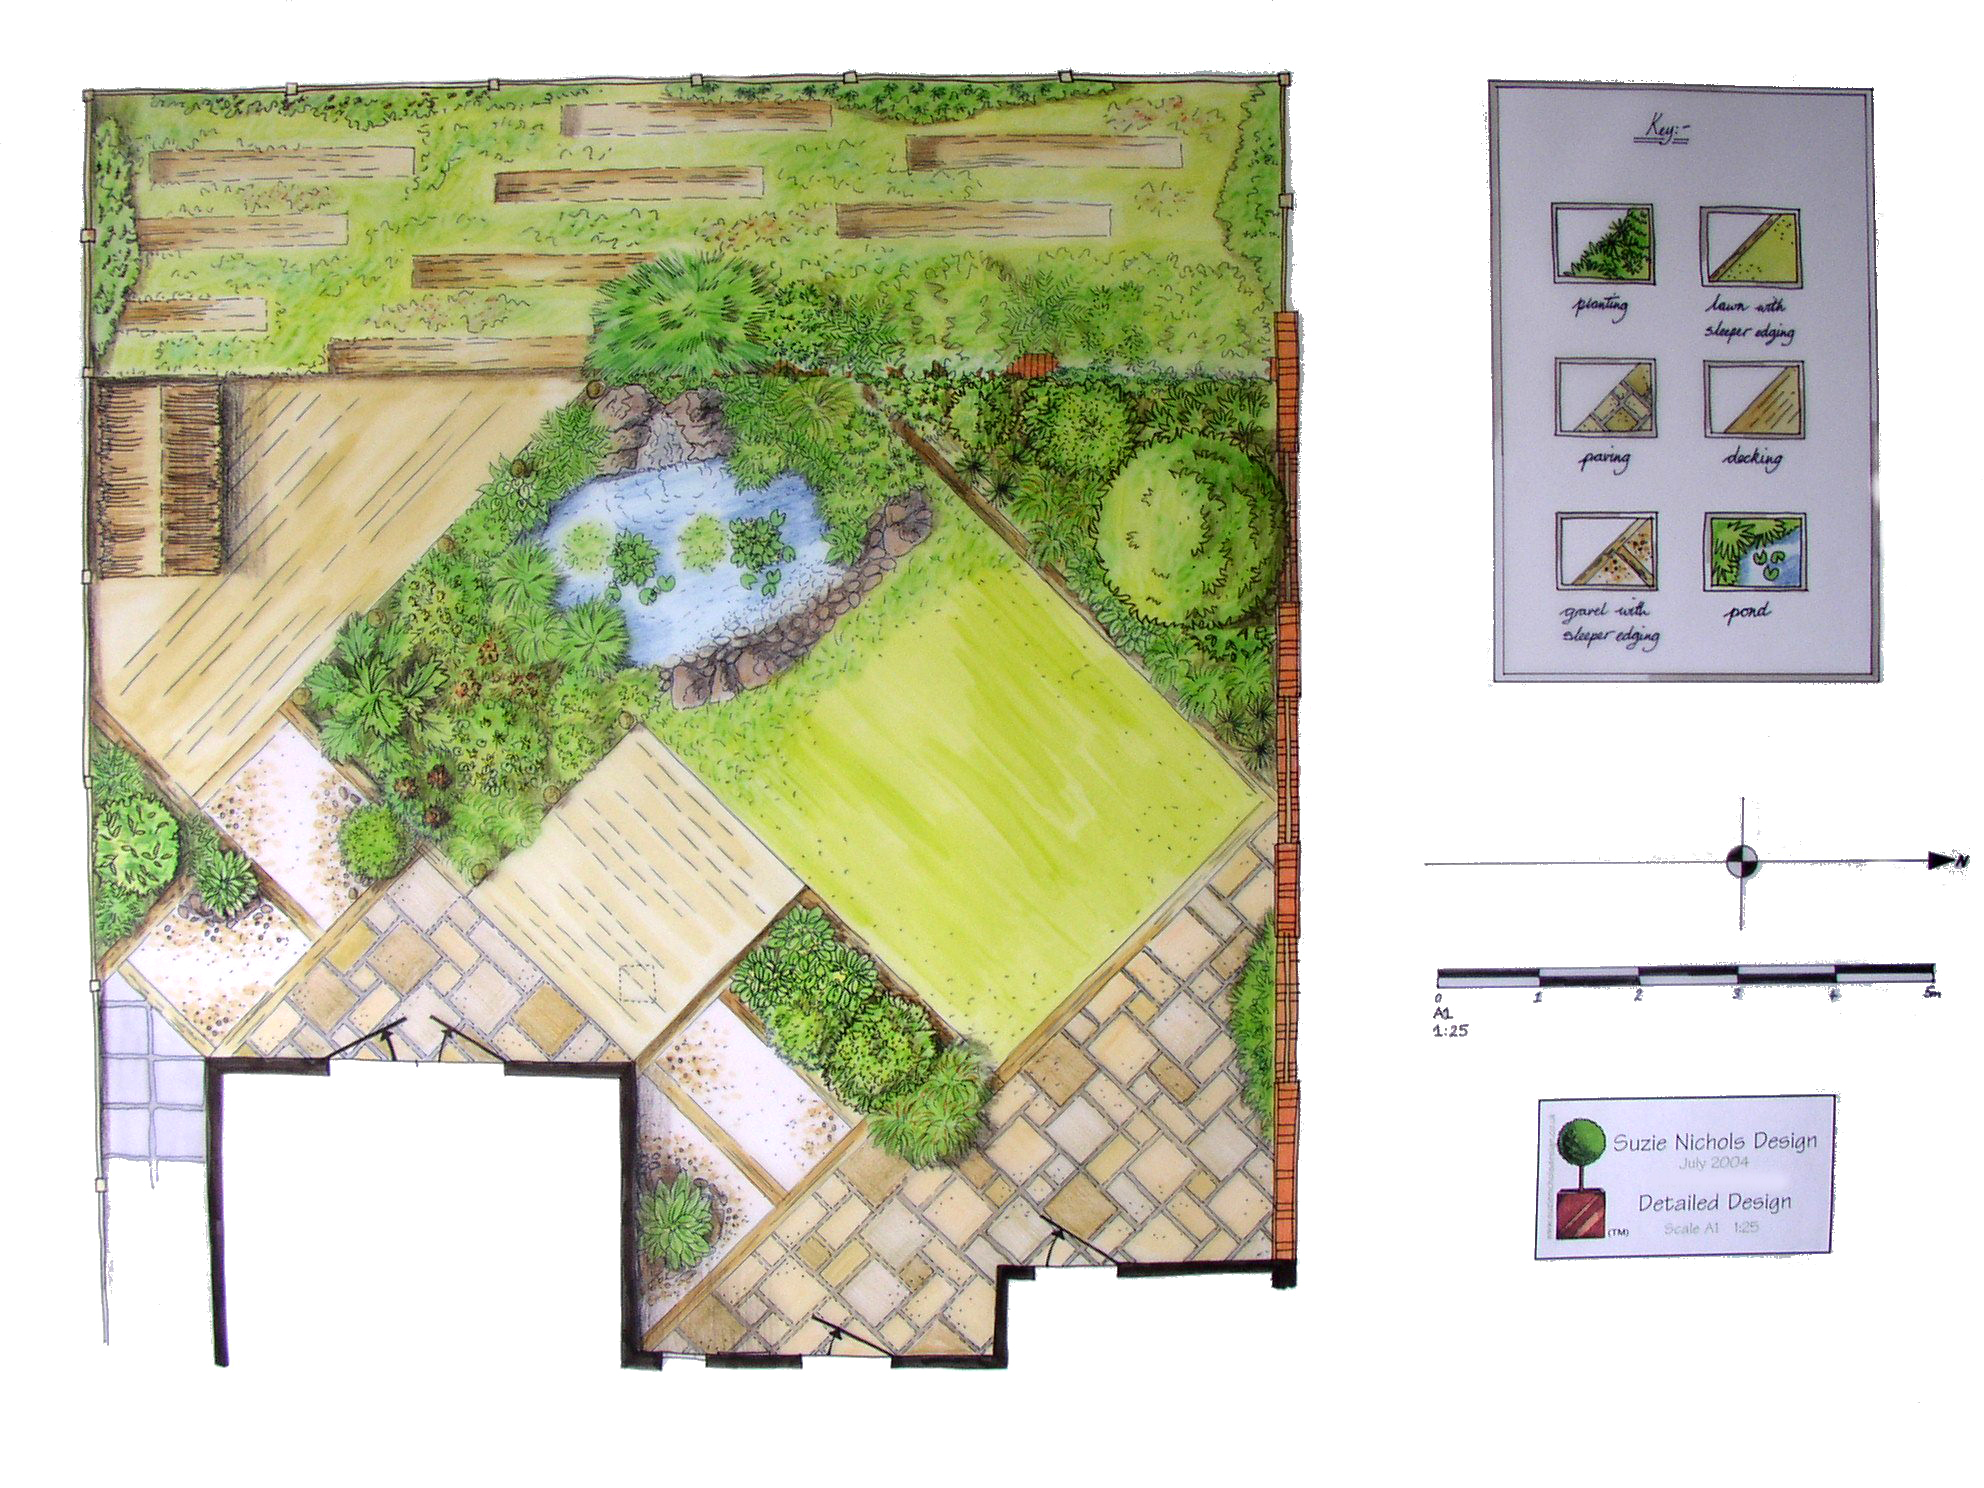  planning a small garden design